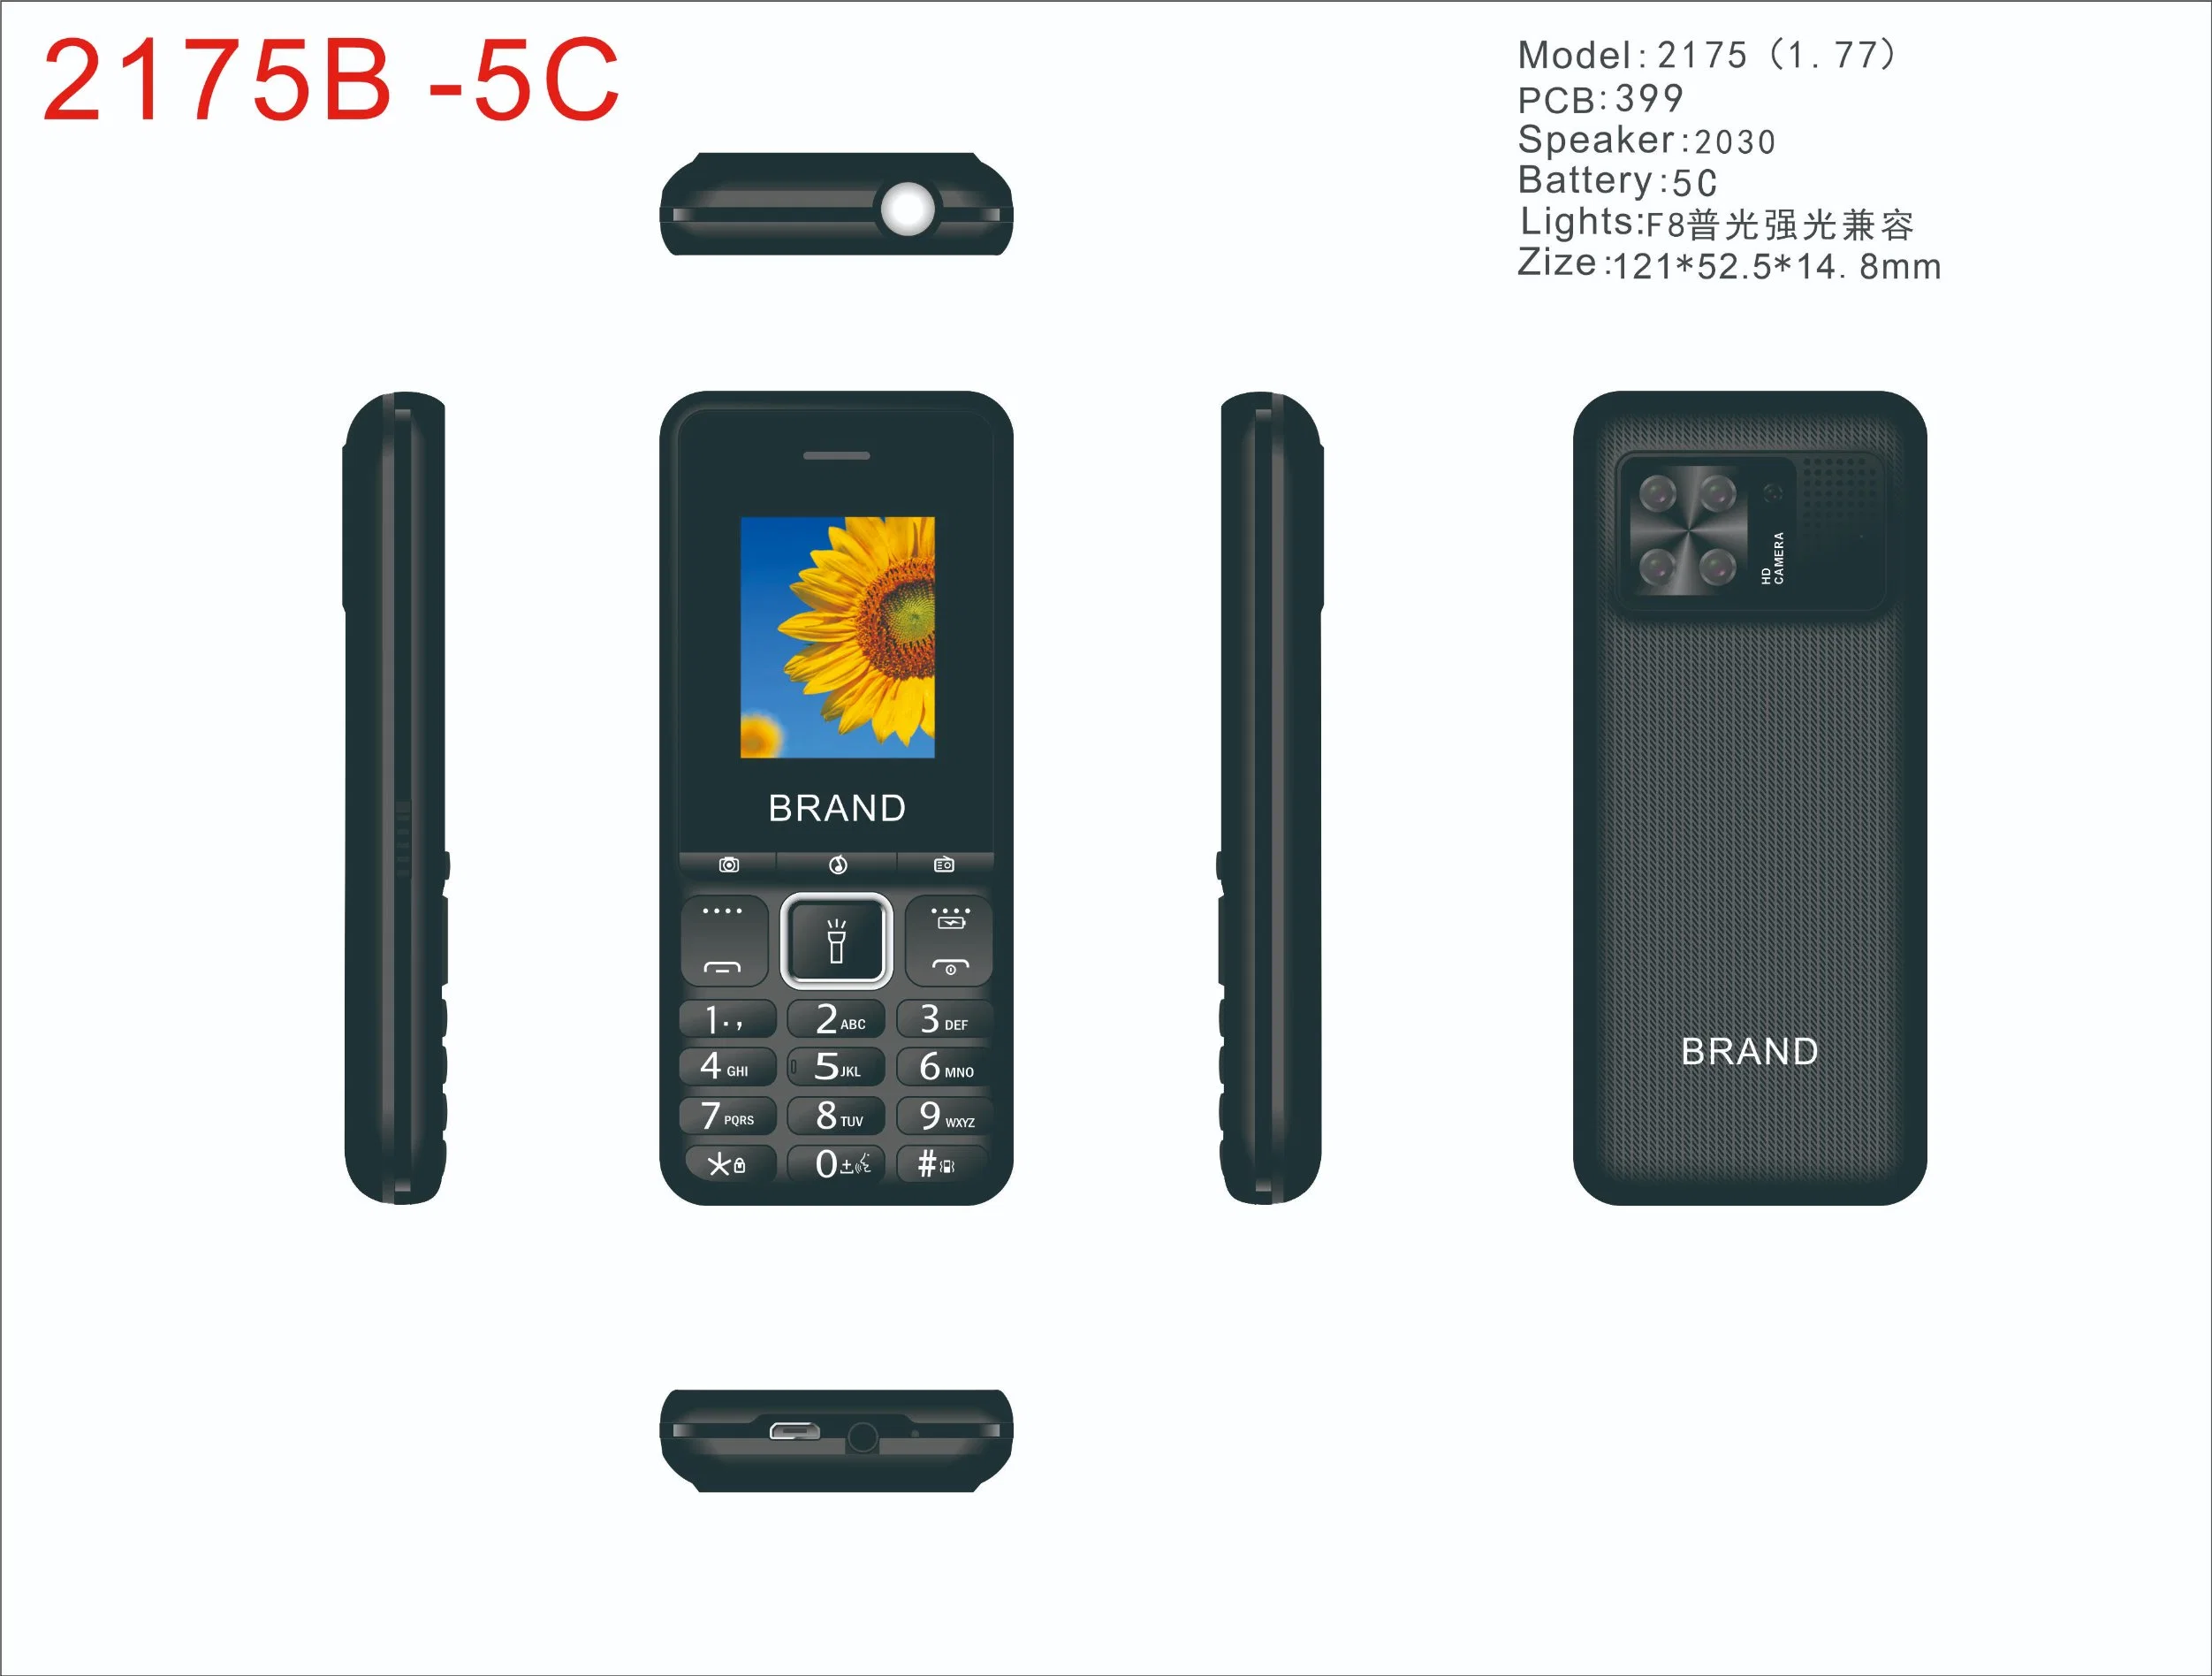 Teclado de 1.774g apresentam Bar Telefone, Barato telefones celulares GSM, recurso de música móvel Telefone com duplo SIM, Bl- 5c Grande bateria, altifalante